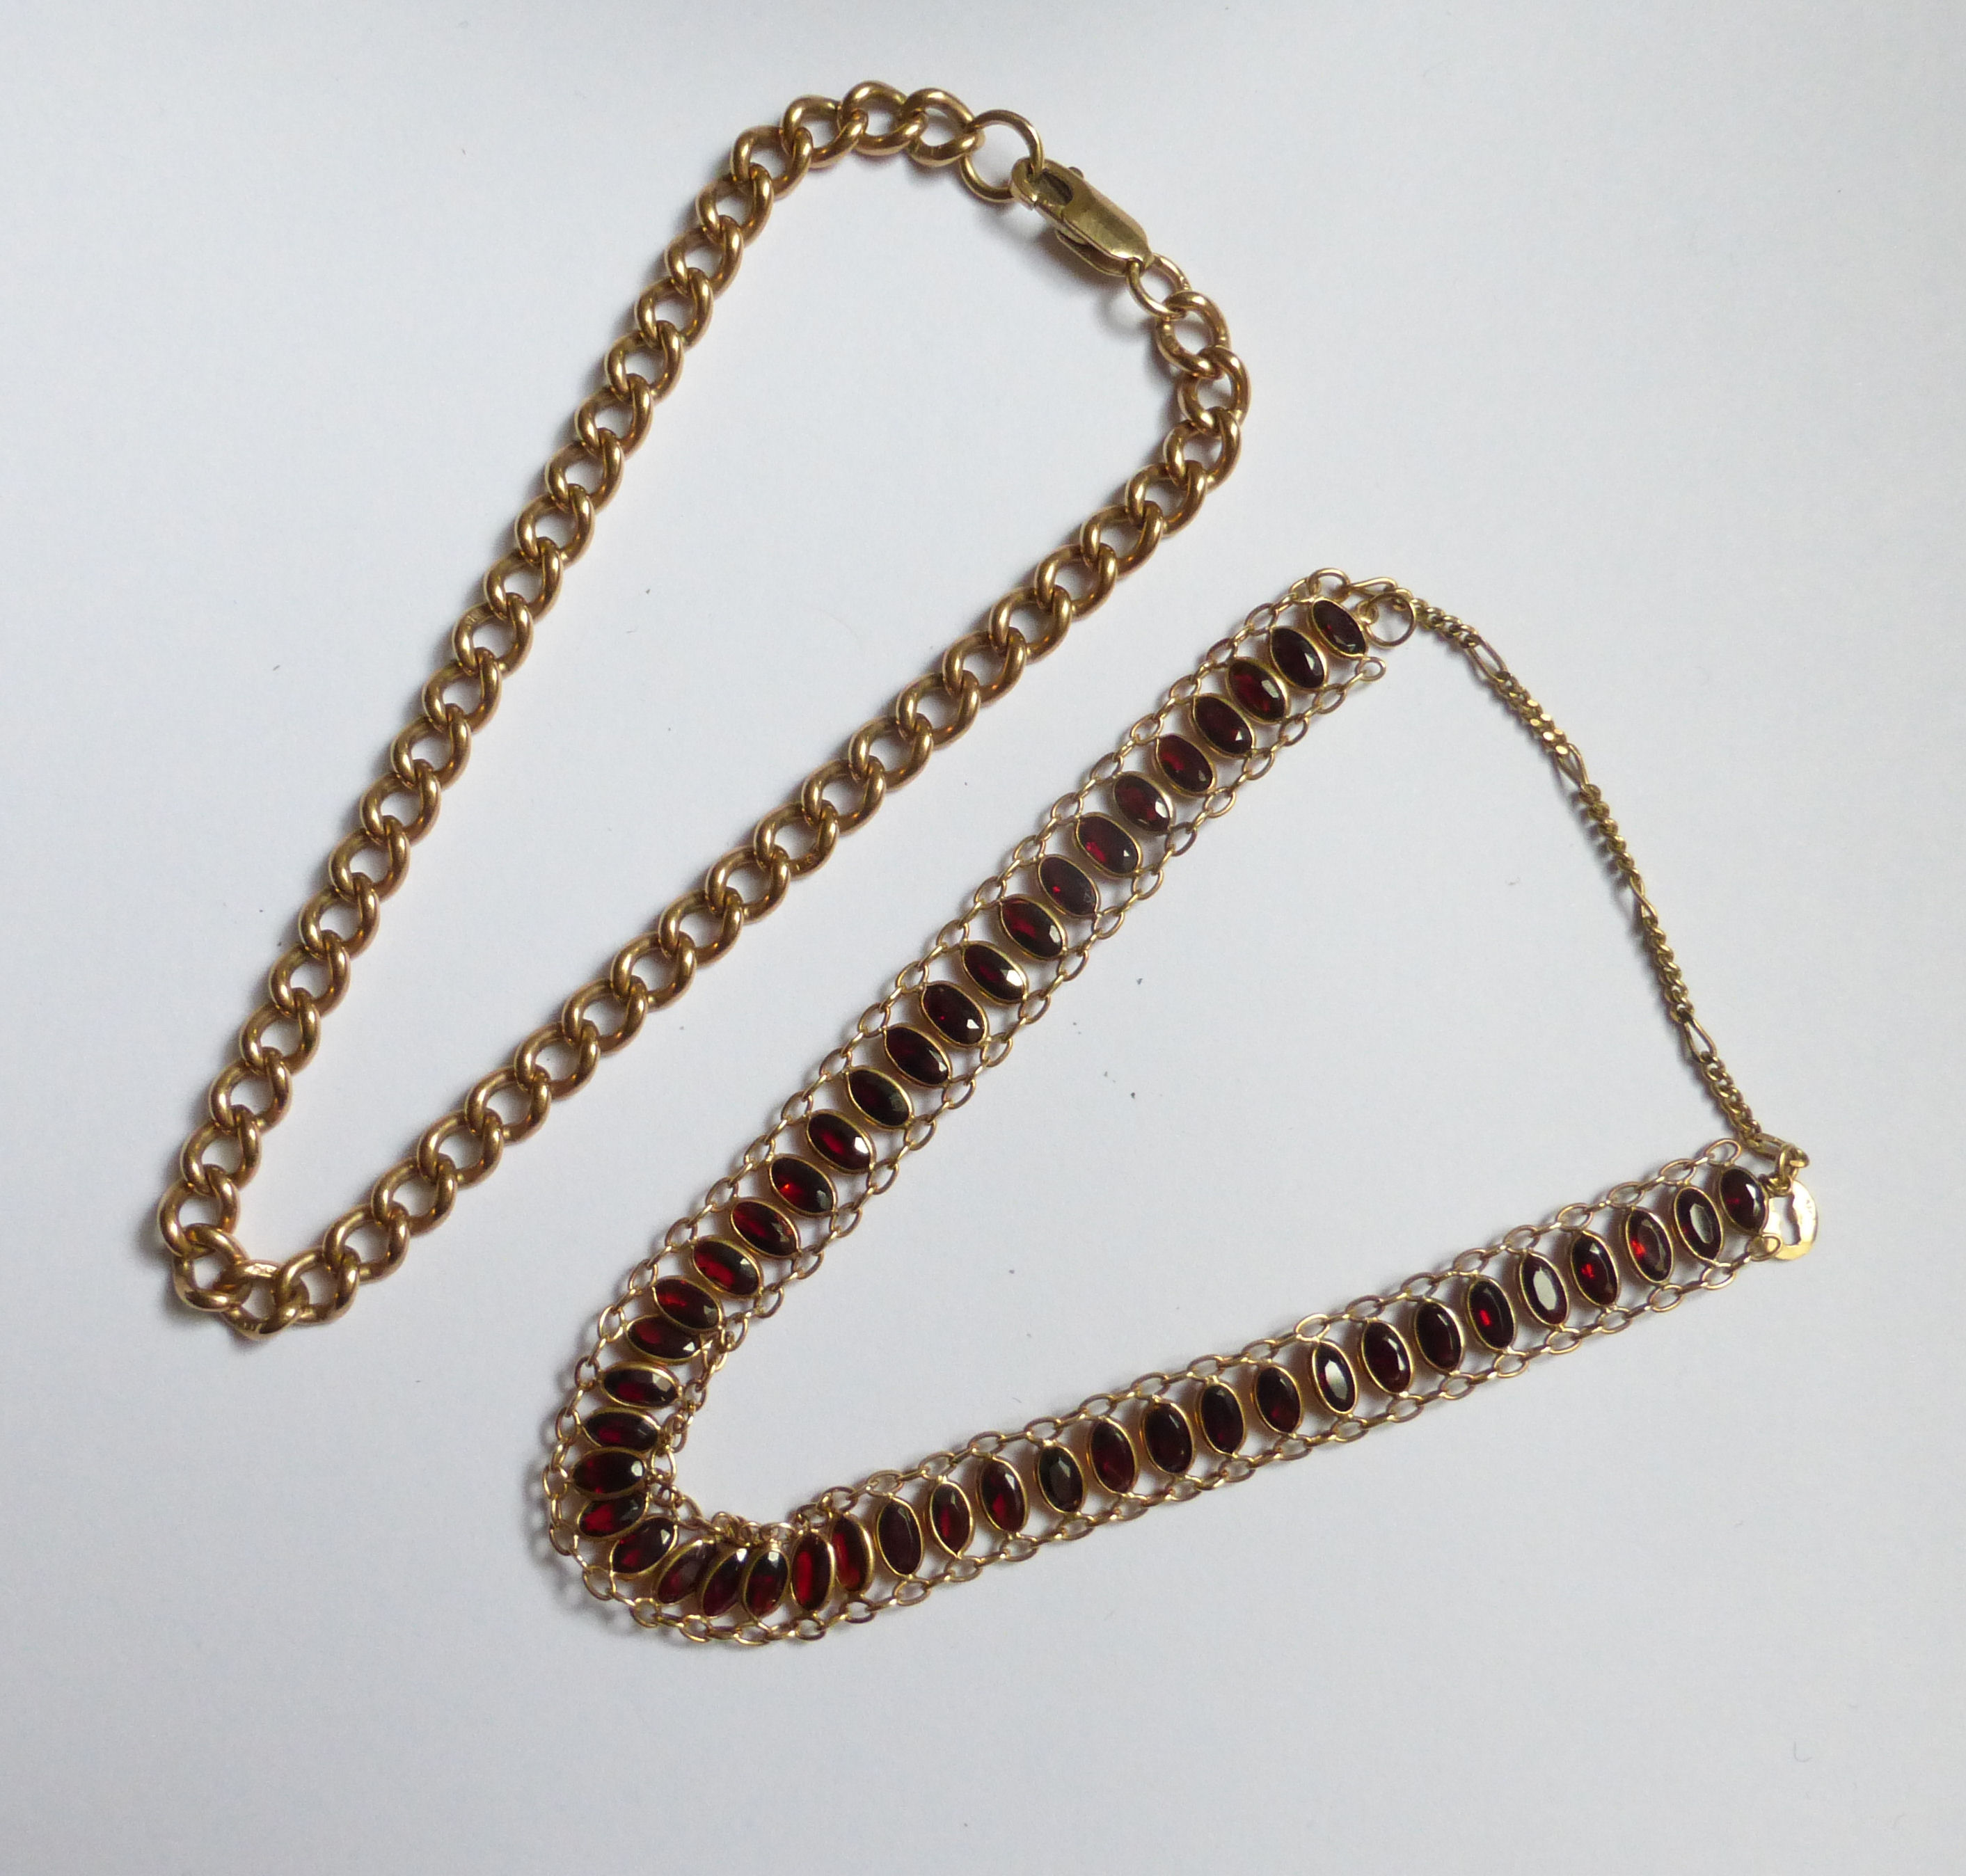 A 9ct. gold garnet set Bracelet and 9ct. gold curb link bracelet.